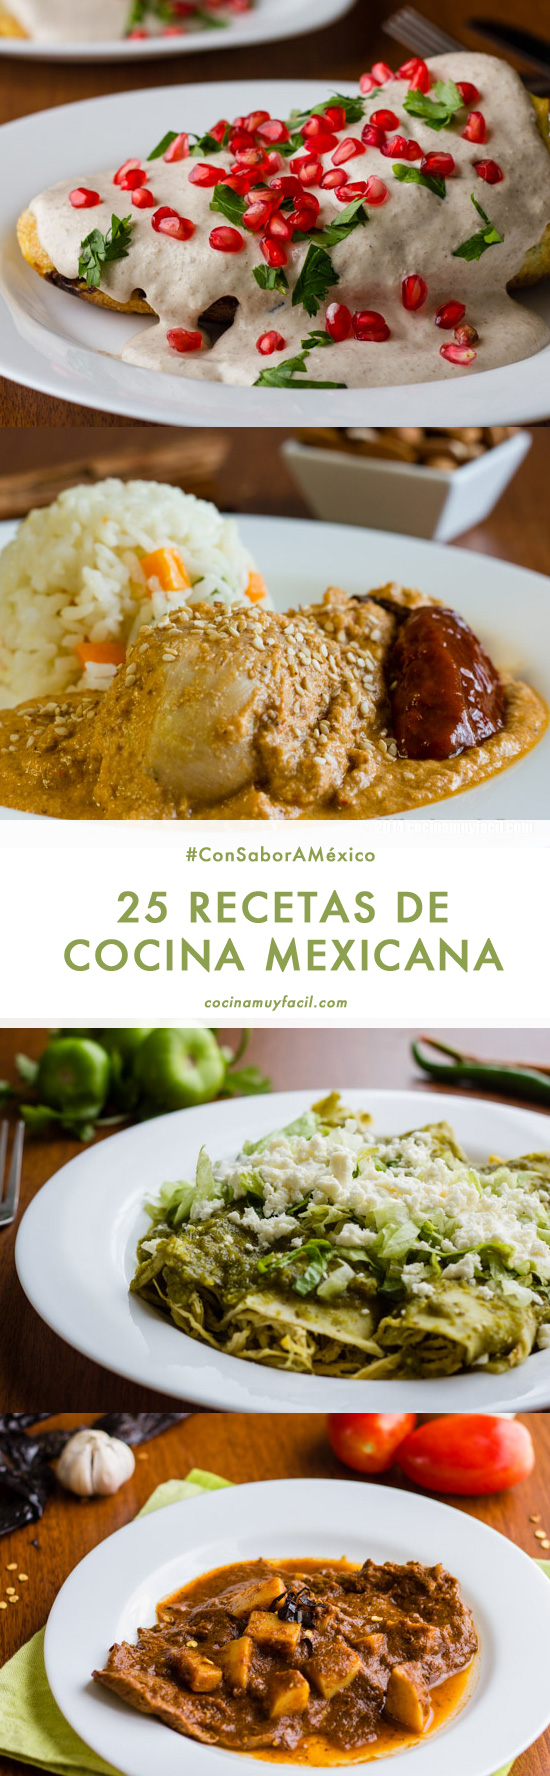 25 recetas de cocina mexicana | cocinamuyfacil.com